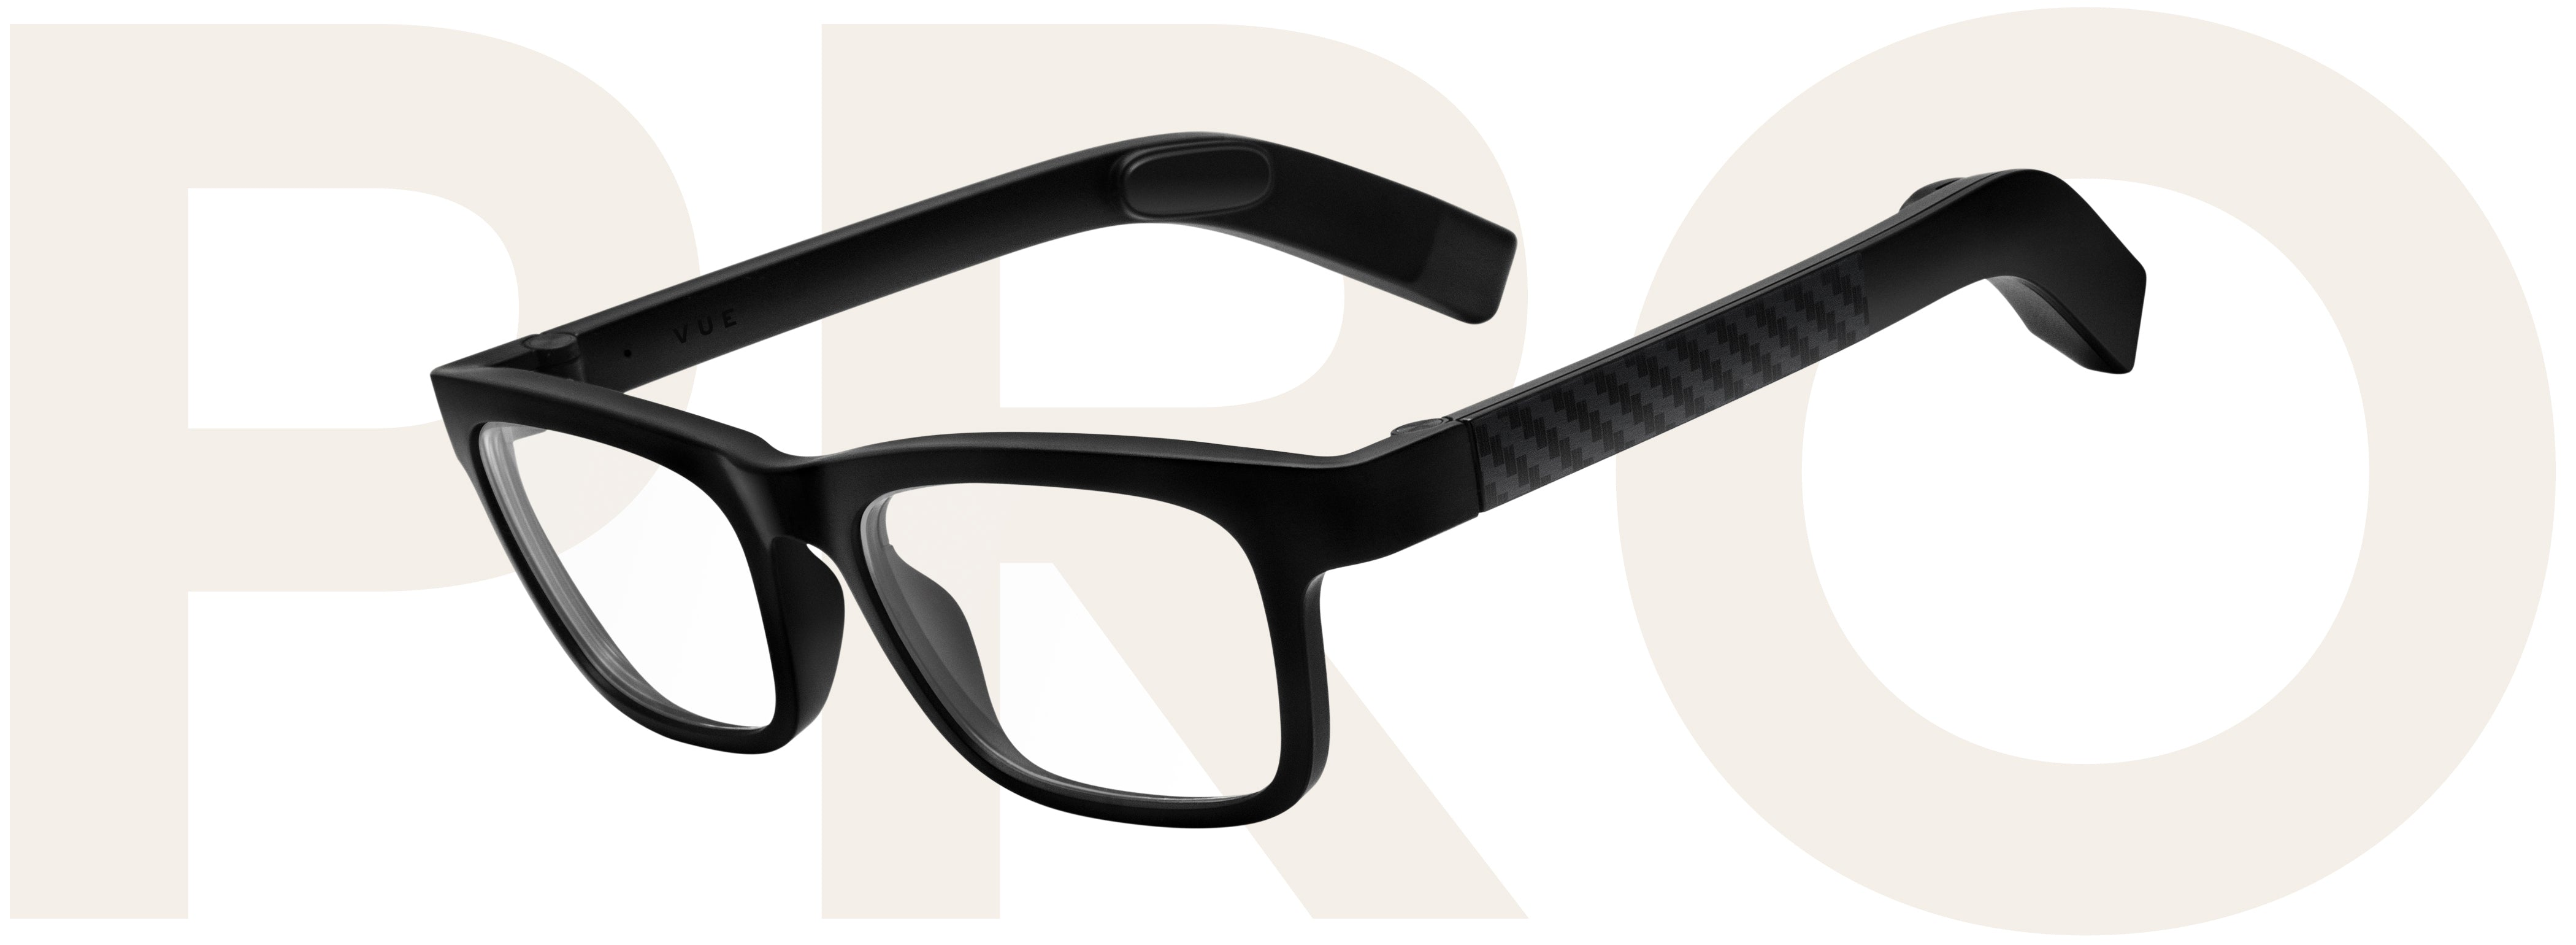 Vue Pro Classic Carbon Fiber eyeglasses with clear prescription lenses